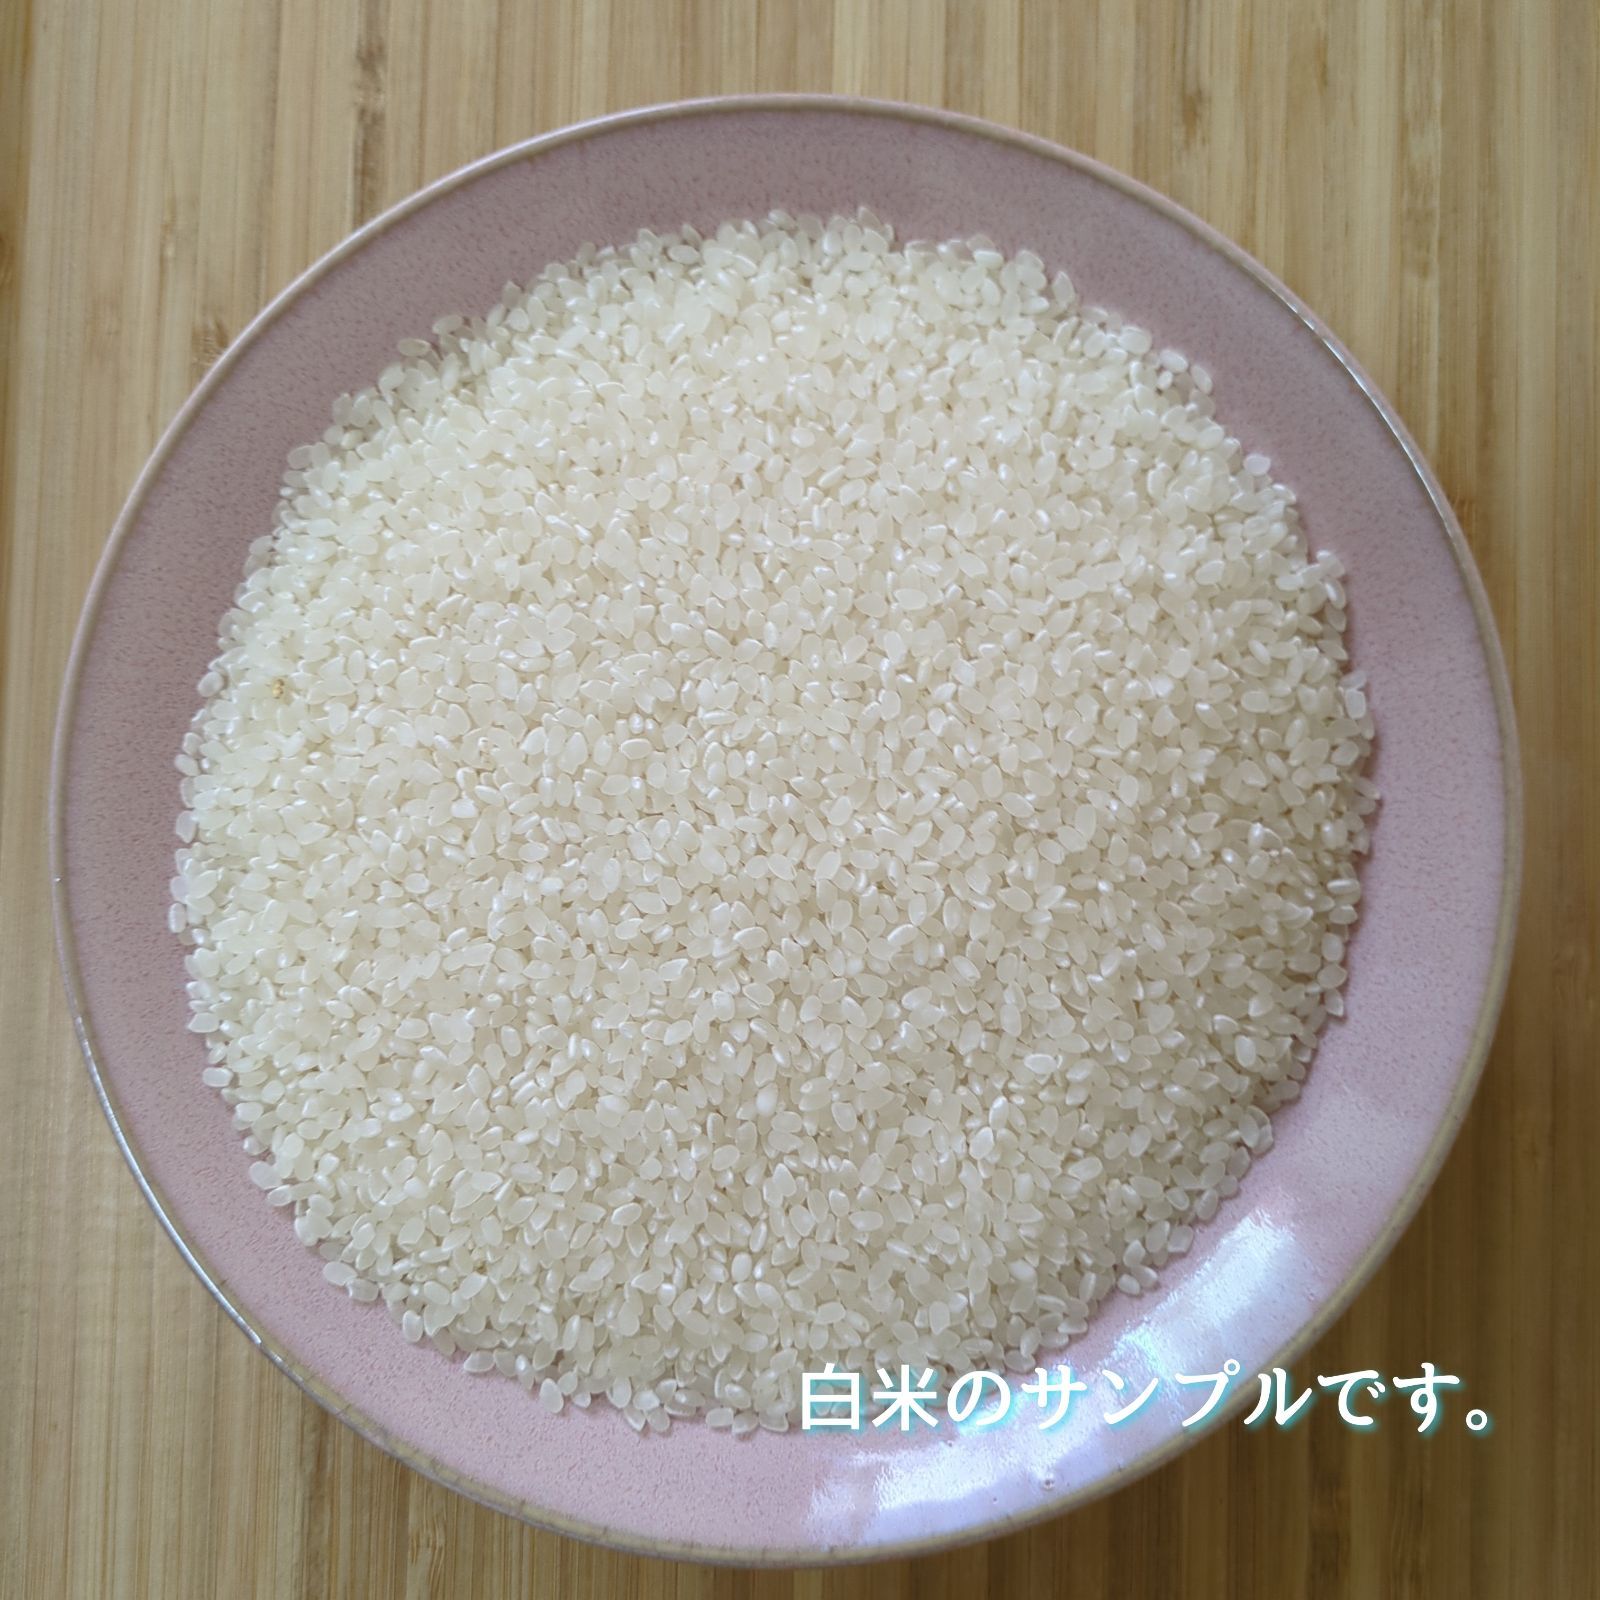 令和5年産三重県伊賀市産コシヒカリ20㎏ 5㎏×4無洗米( 送料精米料消費税込)